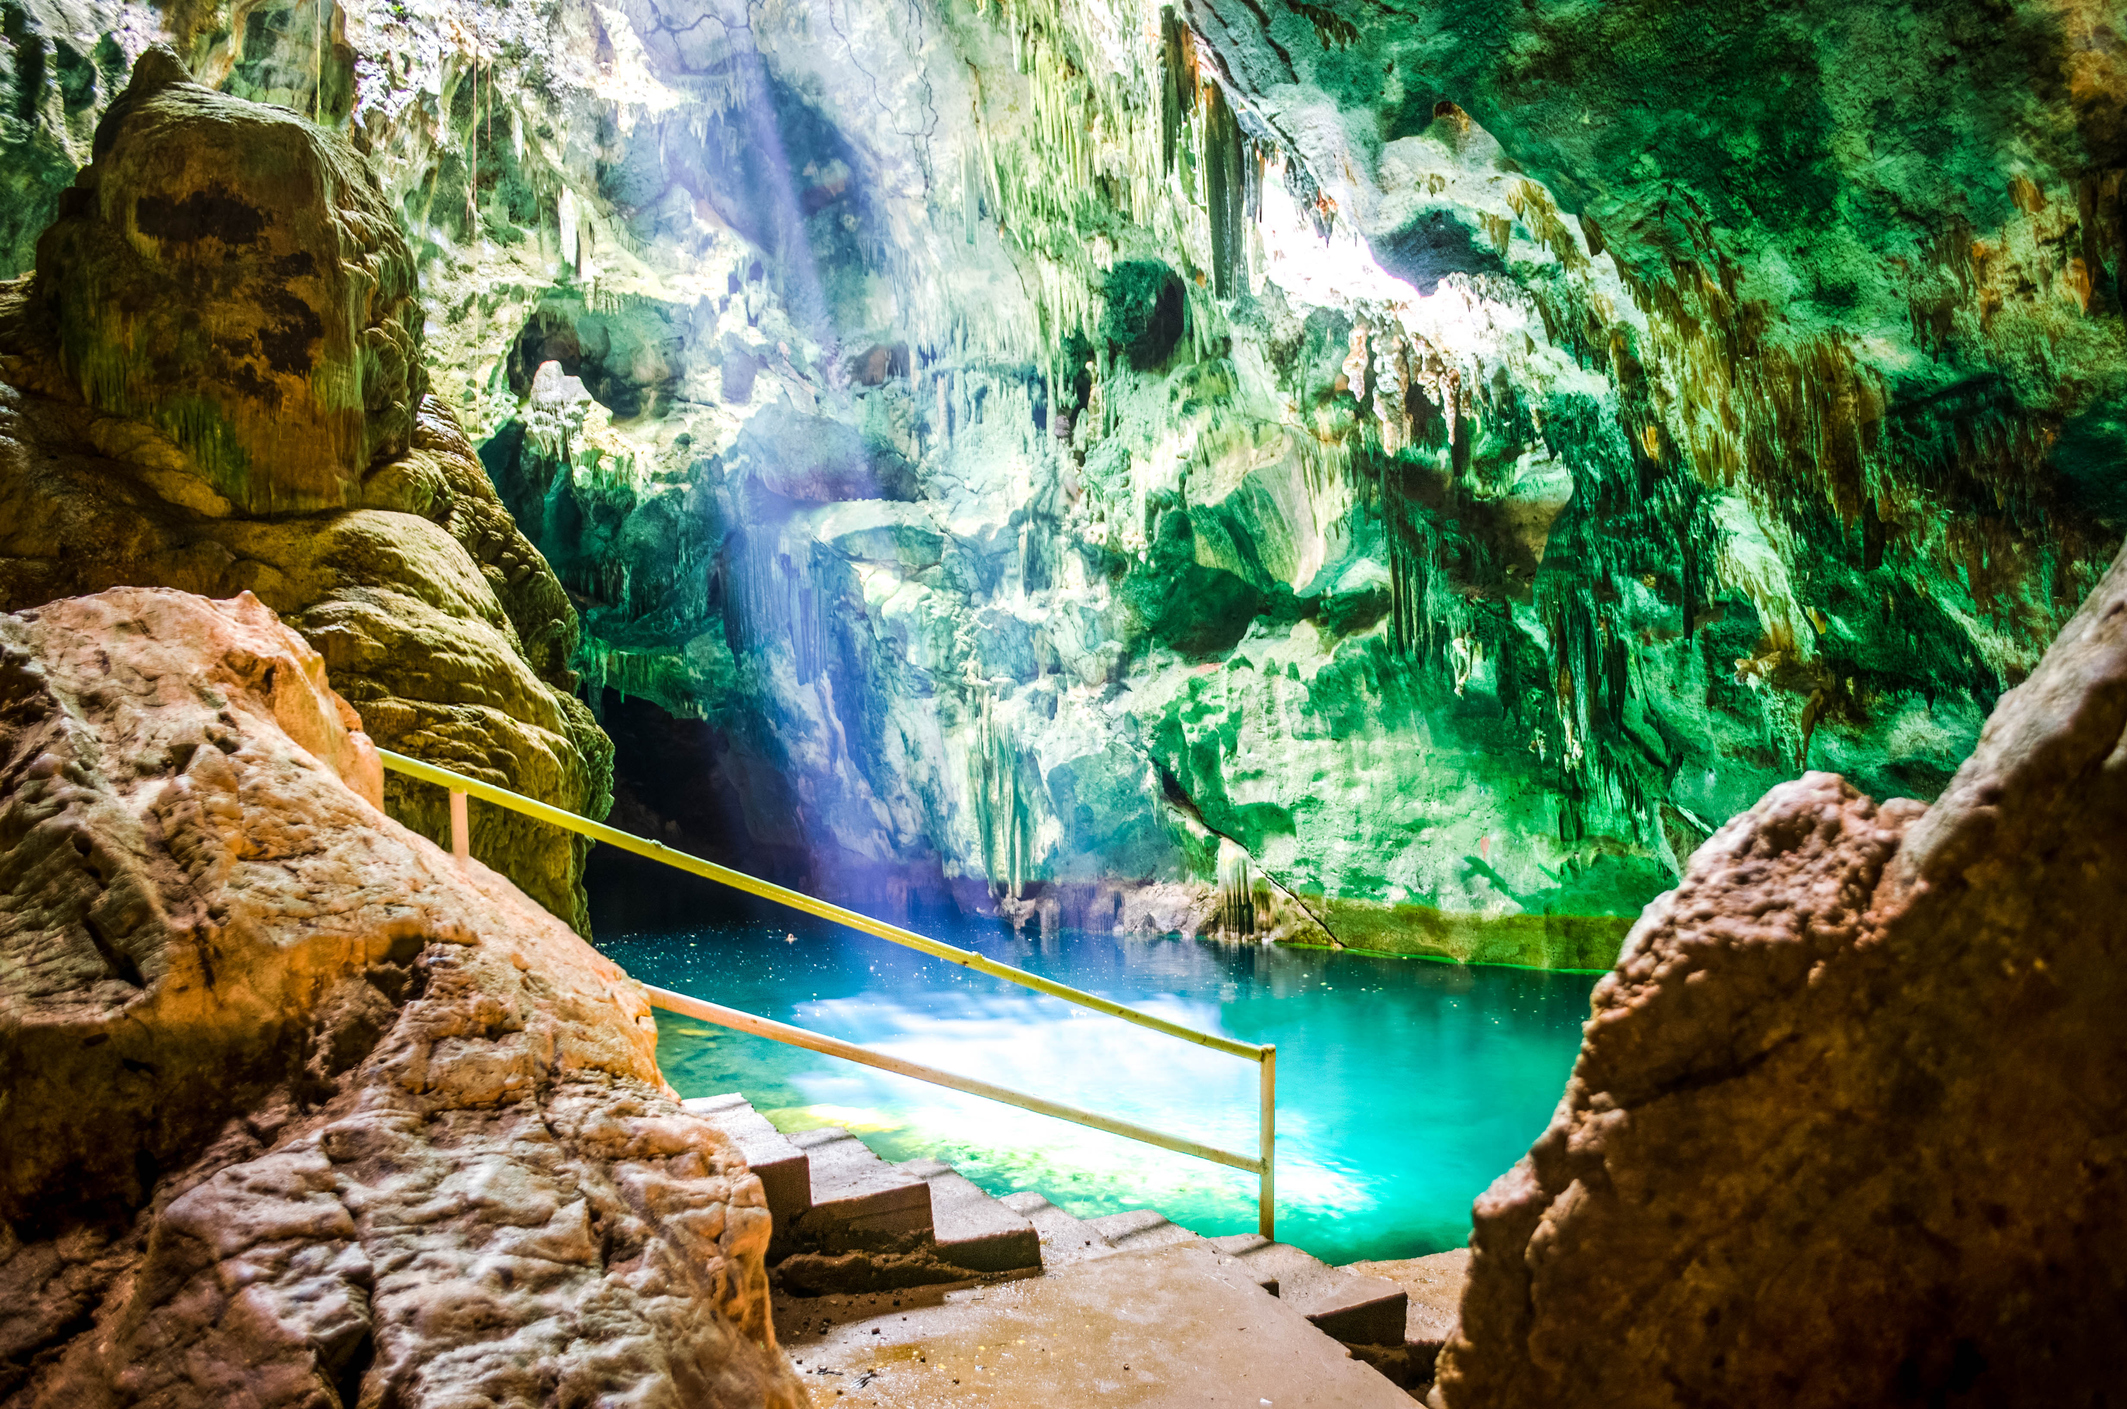 Gaspasree Caves in Trinidad and Tobago